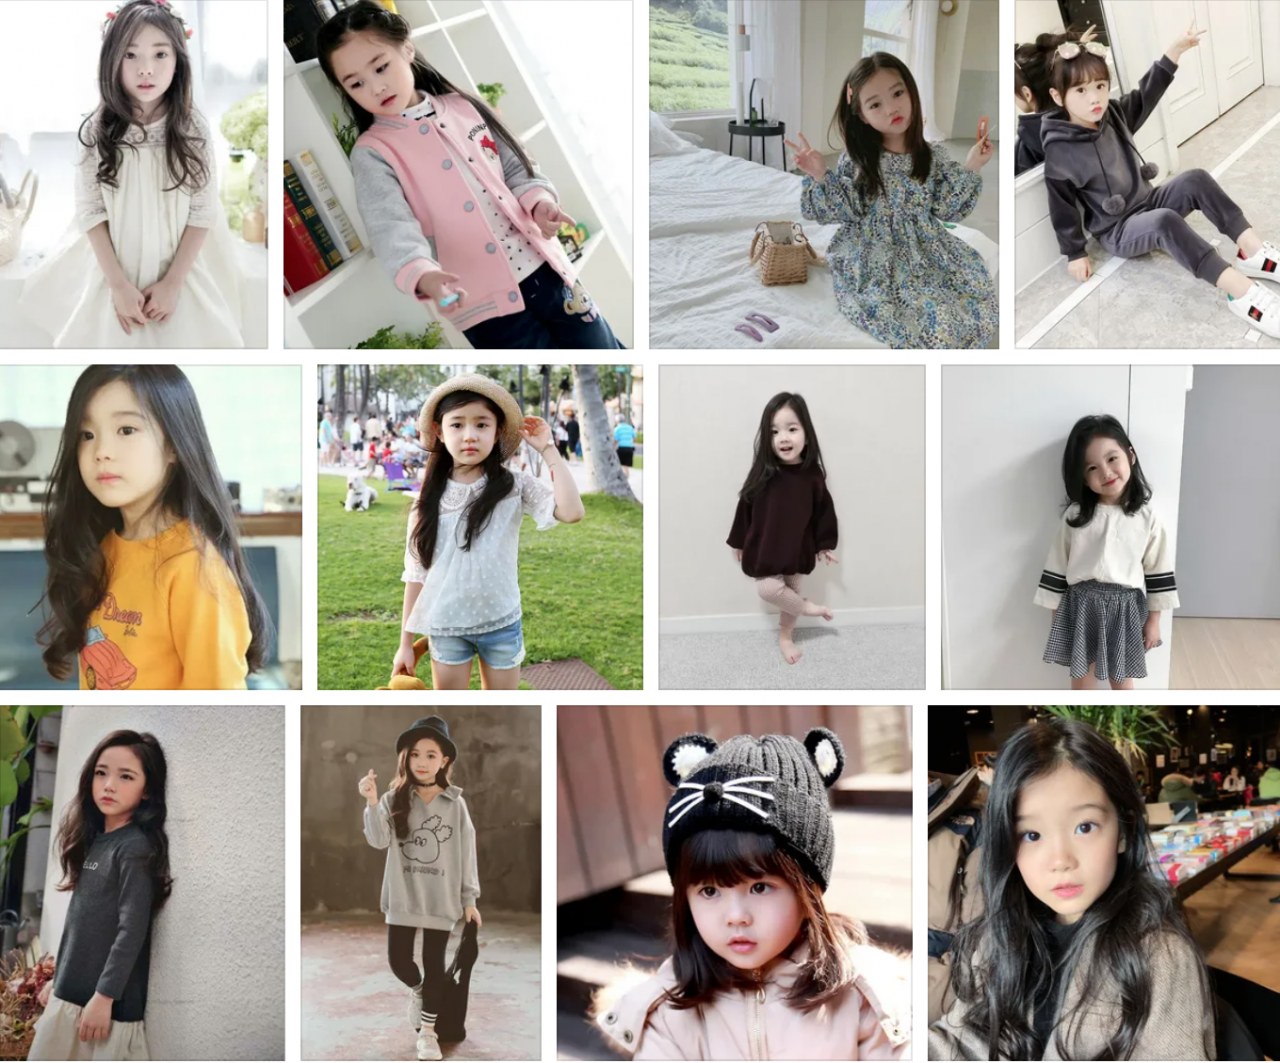 CastWeek: Кастинг девочек (5-8 лет) корейской внешности для съёмок в клипе очень известной певицы.